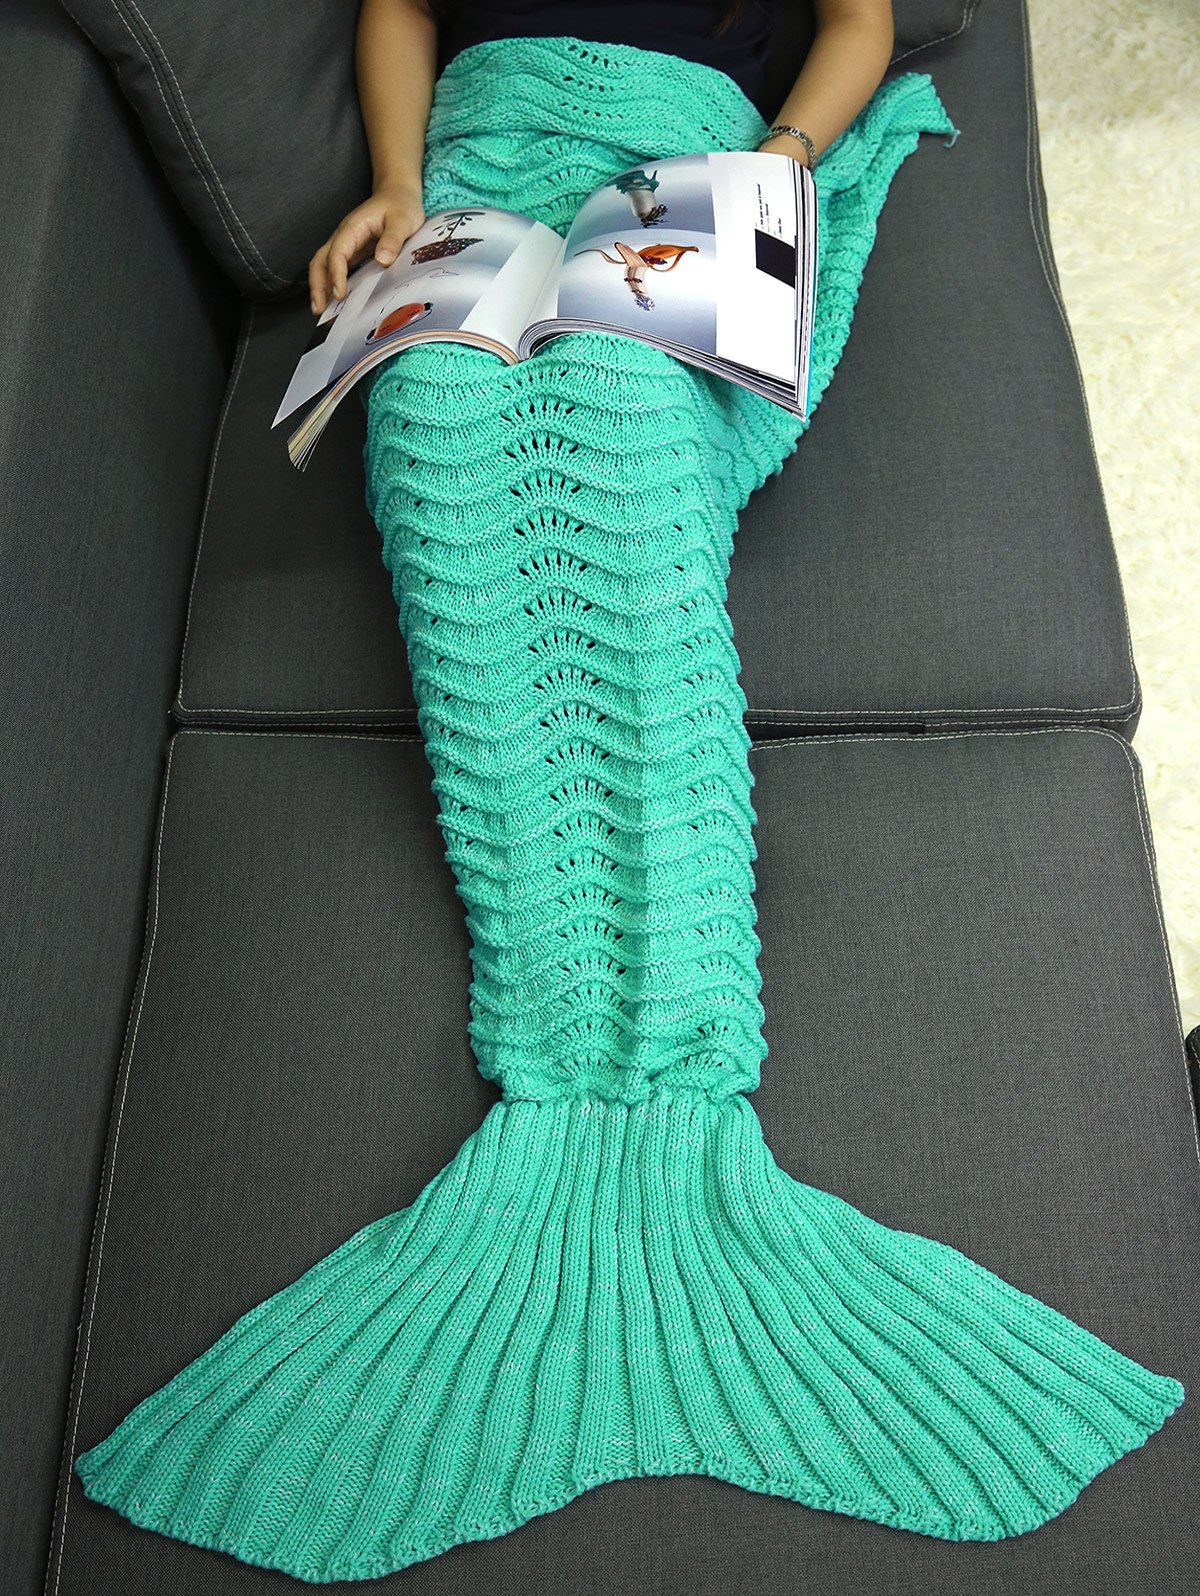 Couverture sac de couchage tricotée motif queue de la sirène Turquoise 